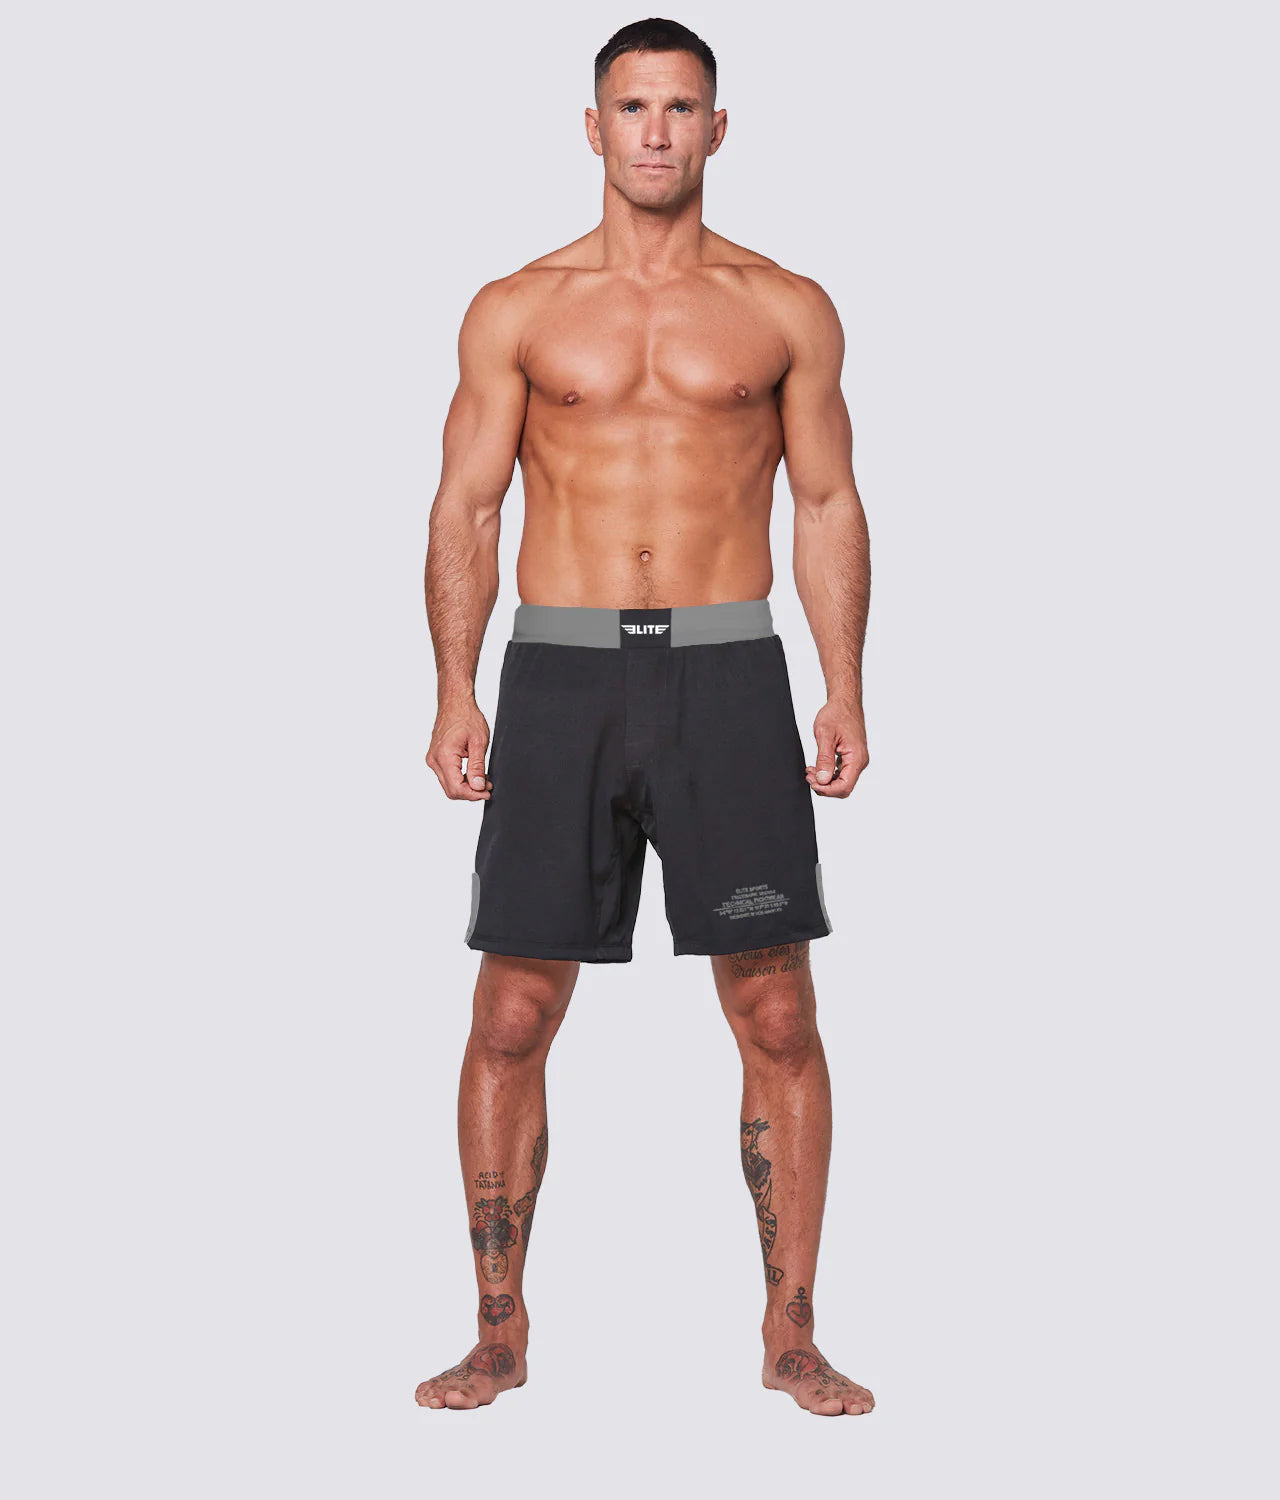 Elite Sports Men's Black Jack Gray Brazilian Jiu Jitsu BJJ No Gi Shorts Front View